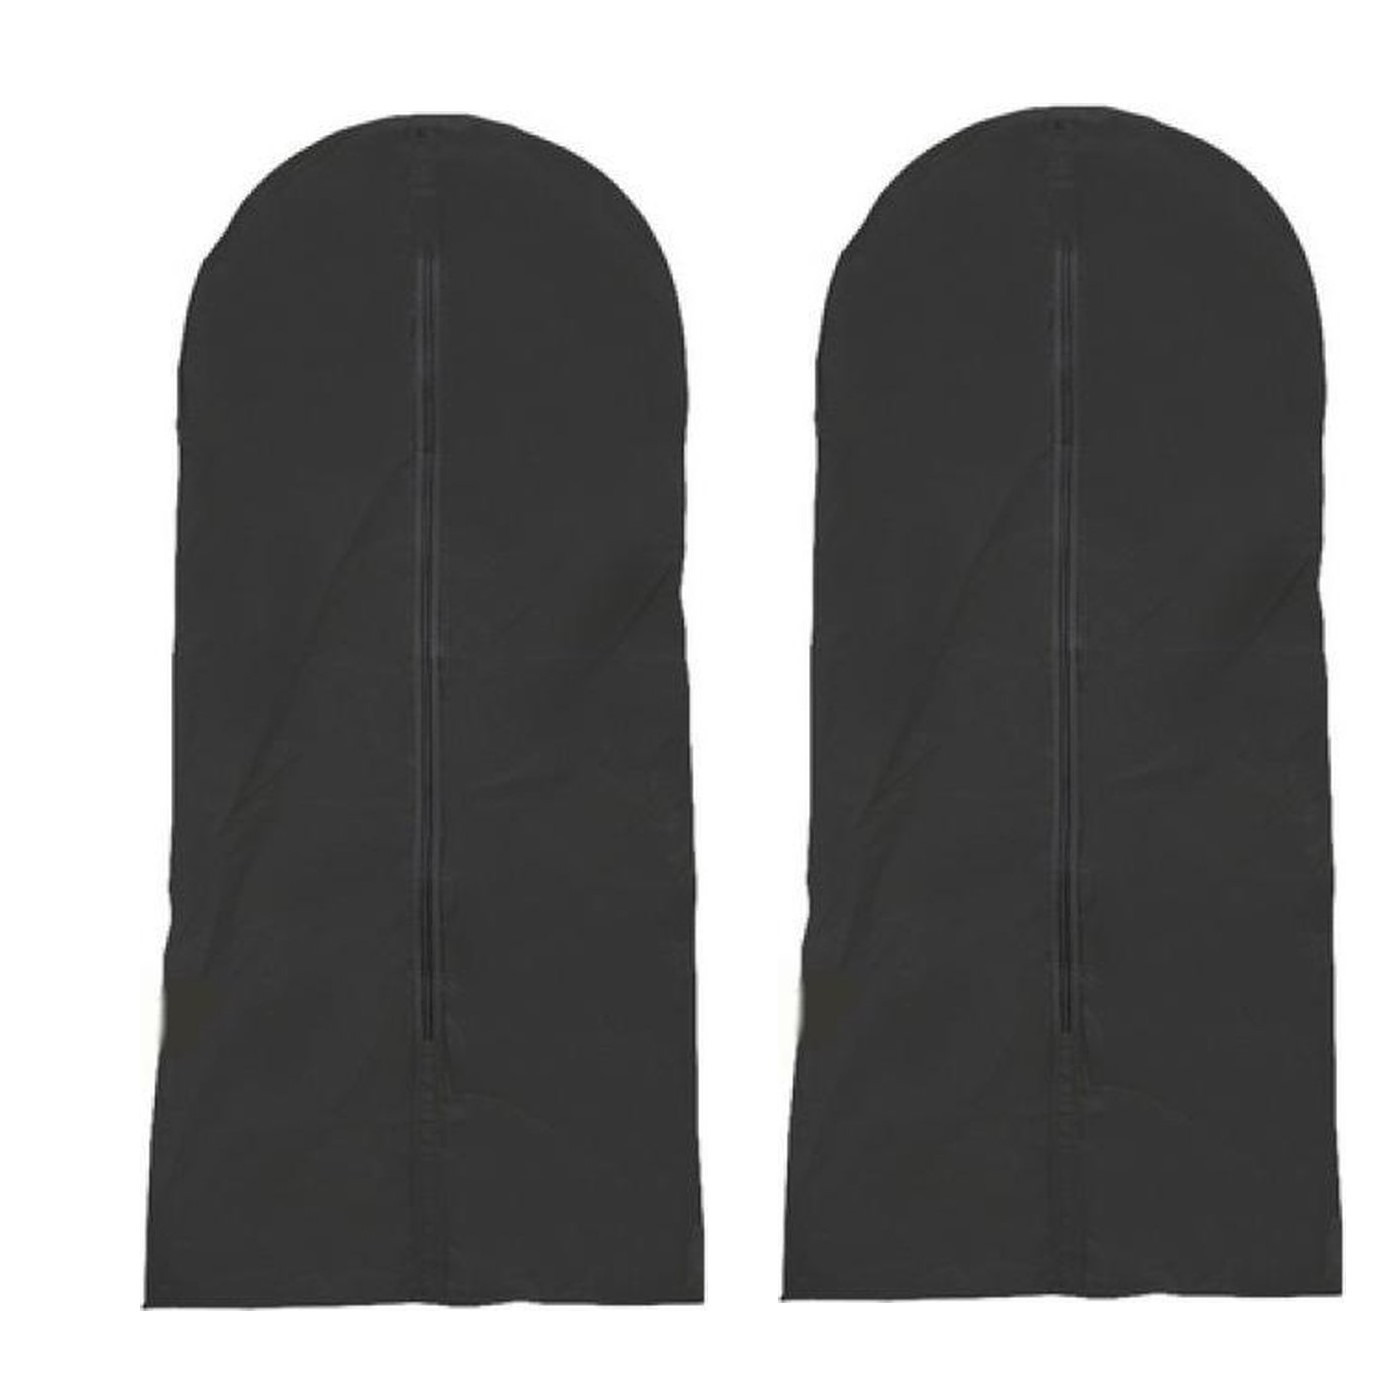 Merkloos 2x stuks zwarte kledinghoes 137 x 60 cm -